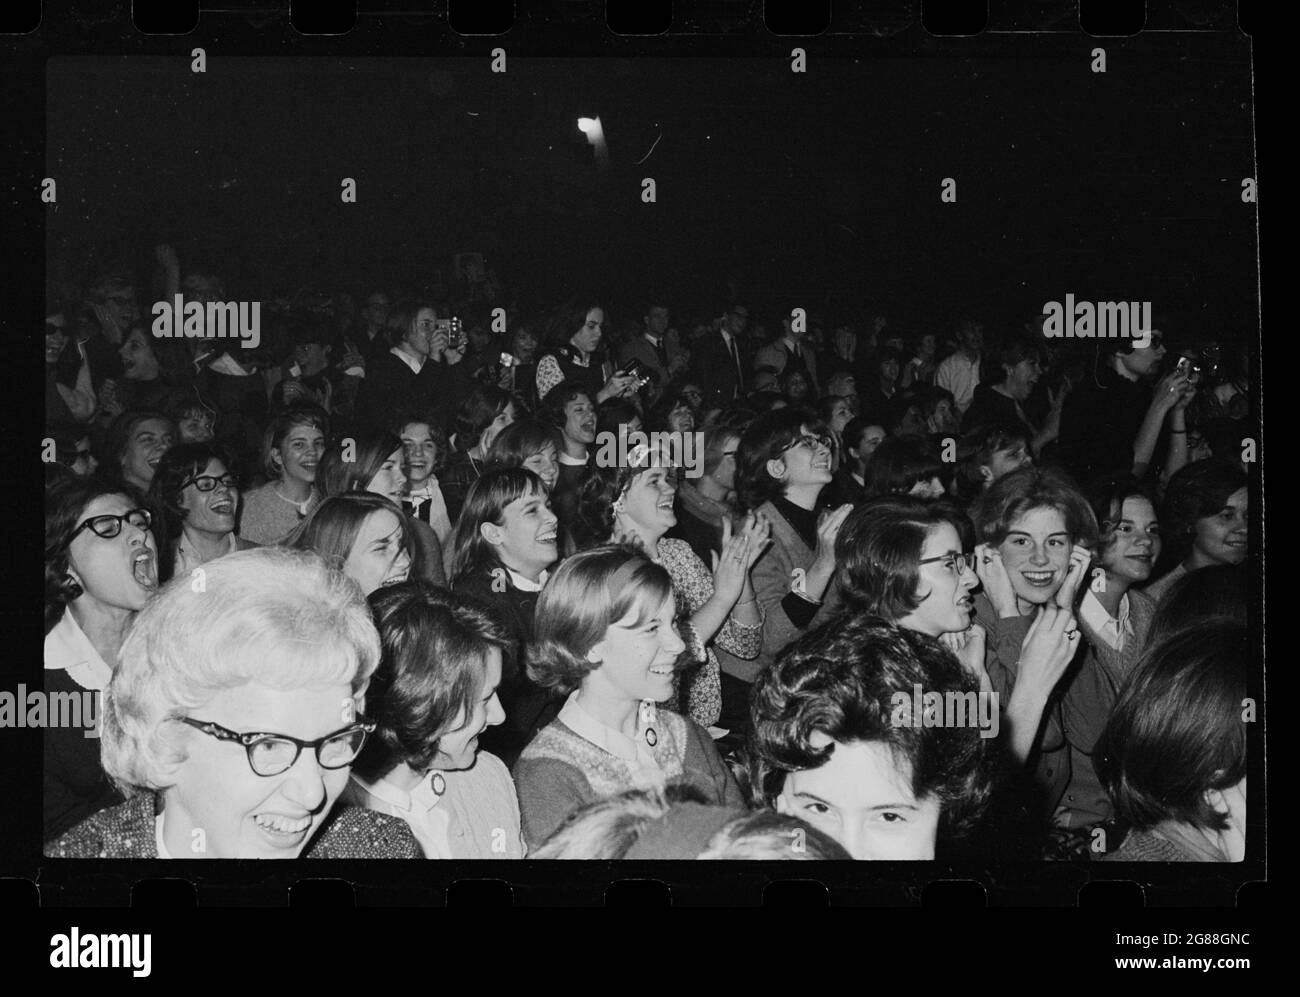 Beatles fans au Washington Coliseum, le 11 février 1964. Crier et crier les femmes dans le public. Trikosko, Marion S., photographe. Banque D'Images